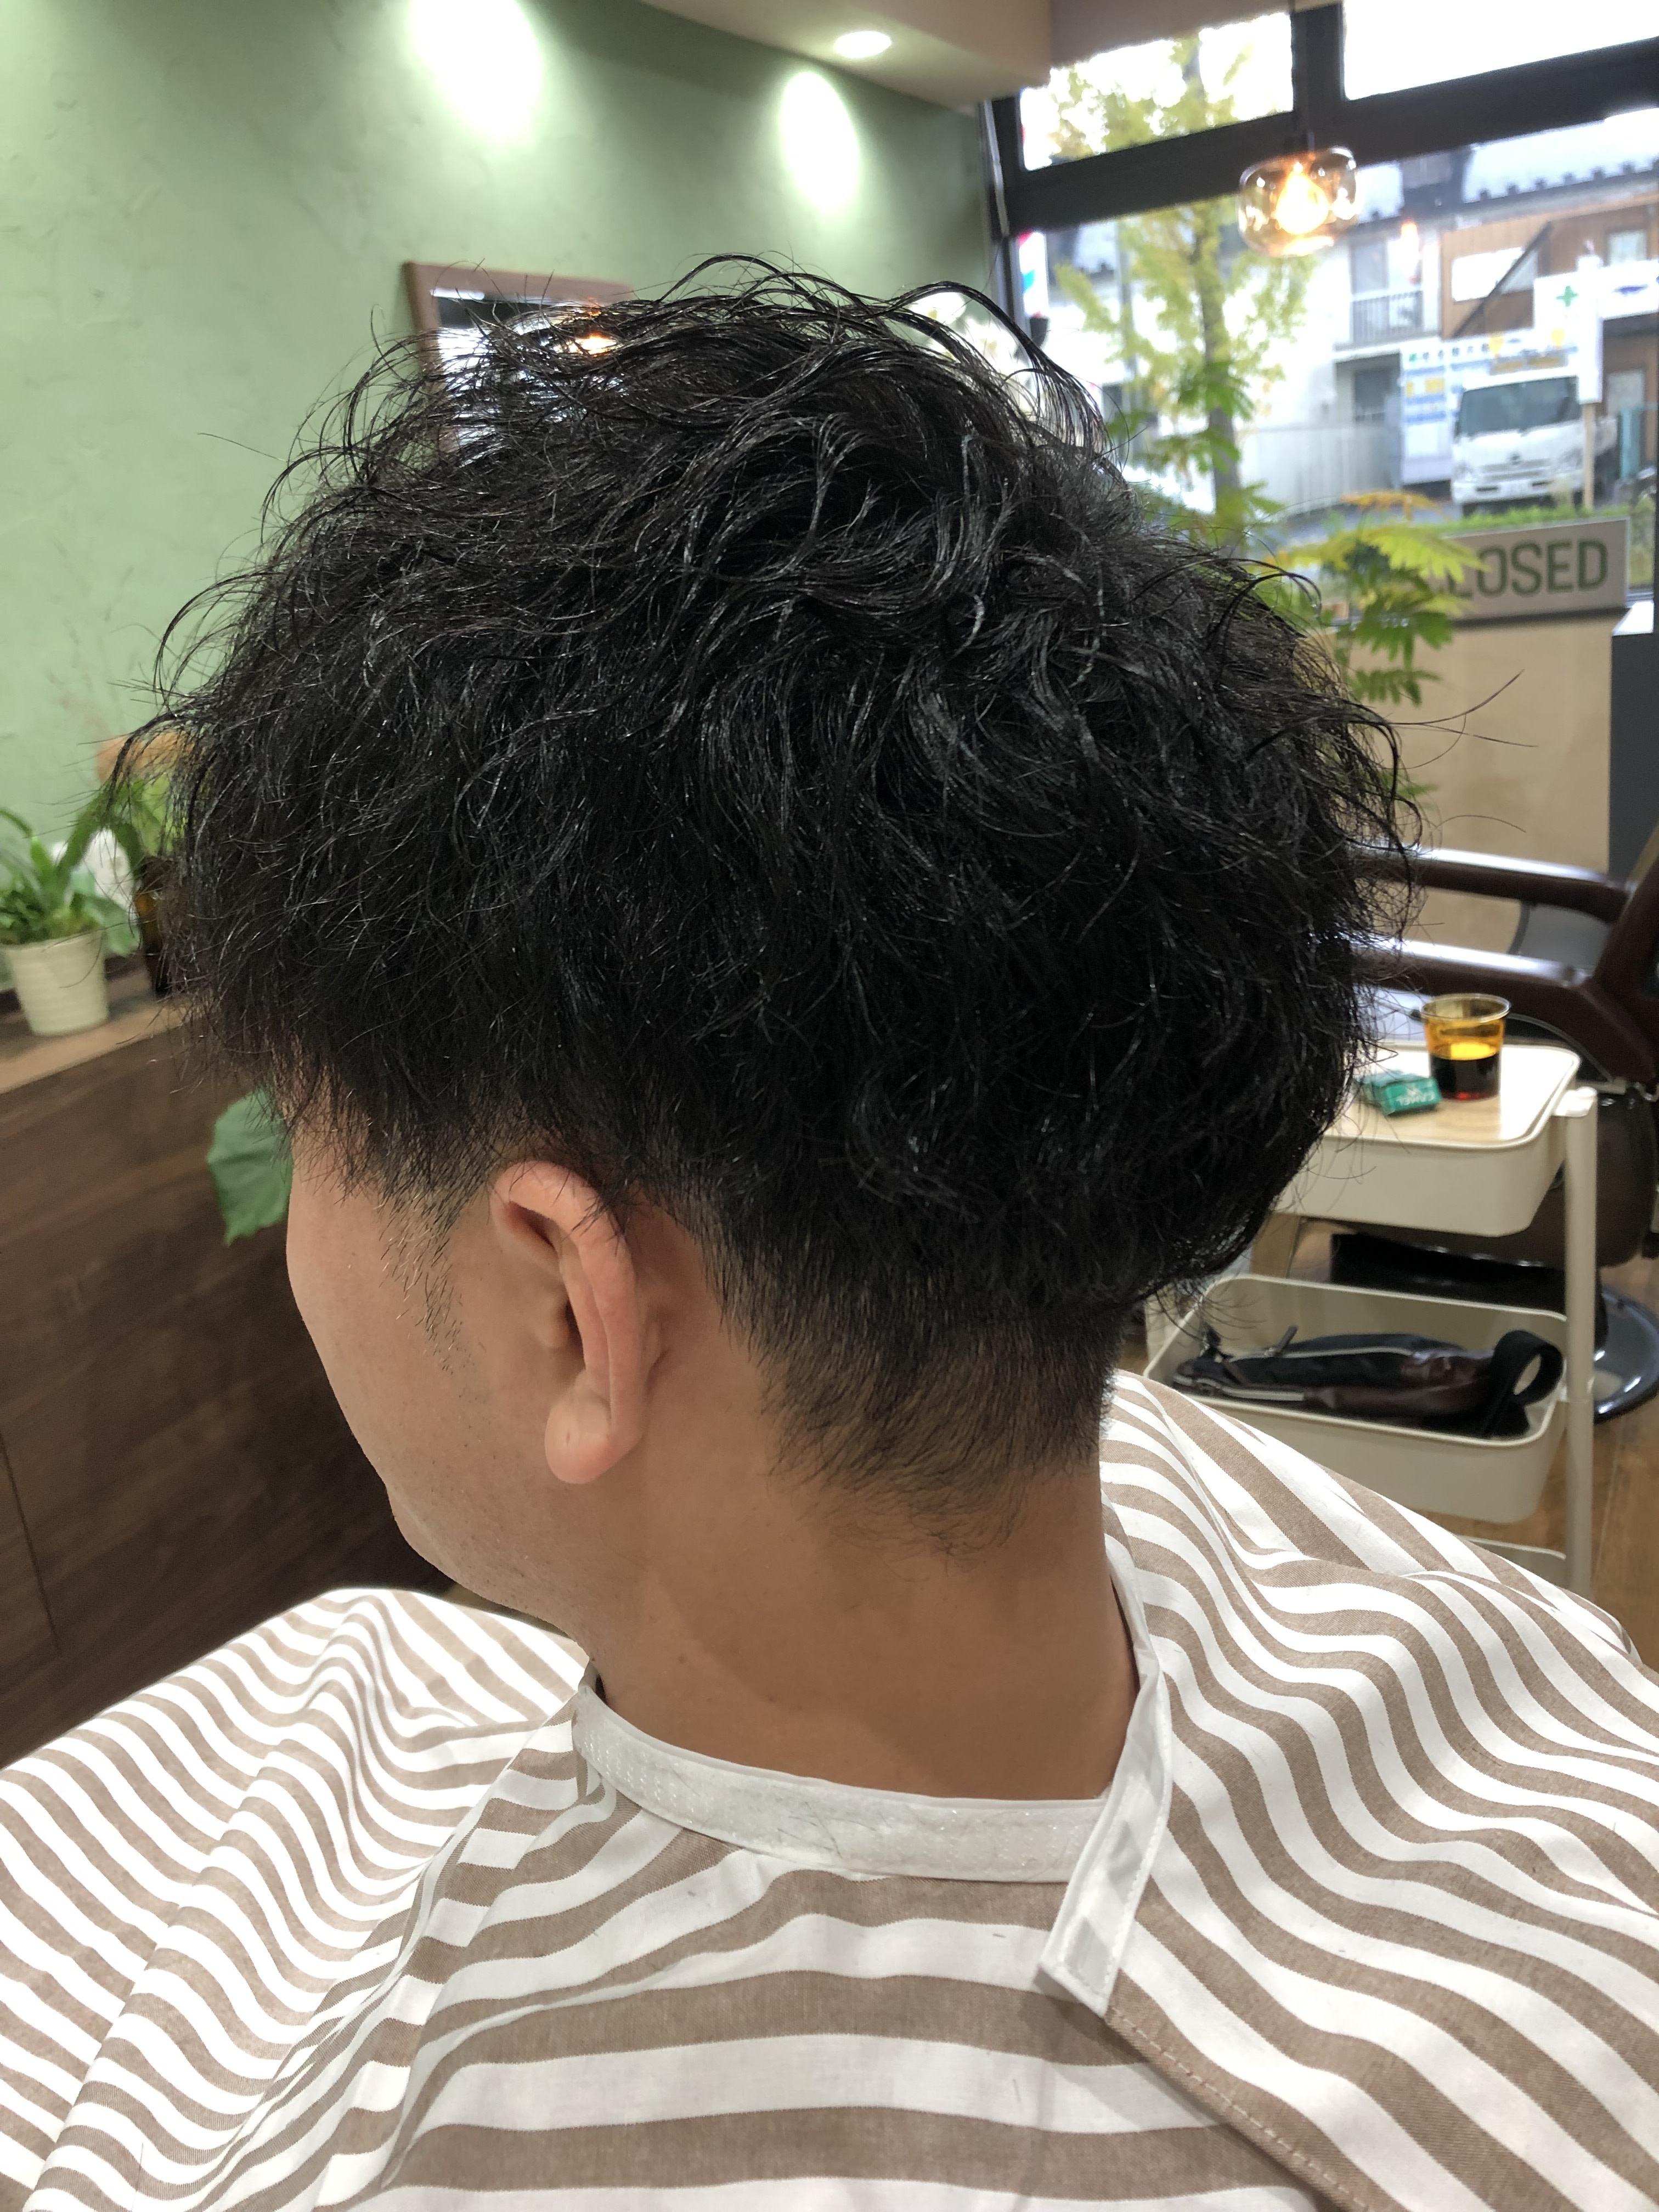 enishi hair works【エニシヘアーワークス】のスタイル紹介。ツイストスパイラル